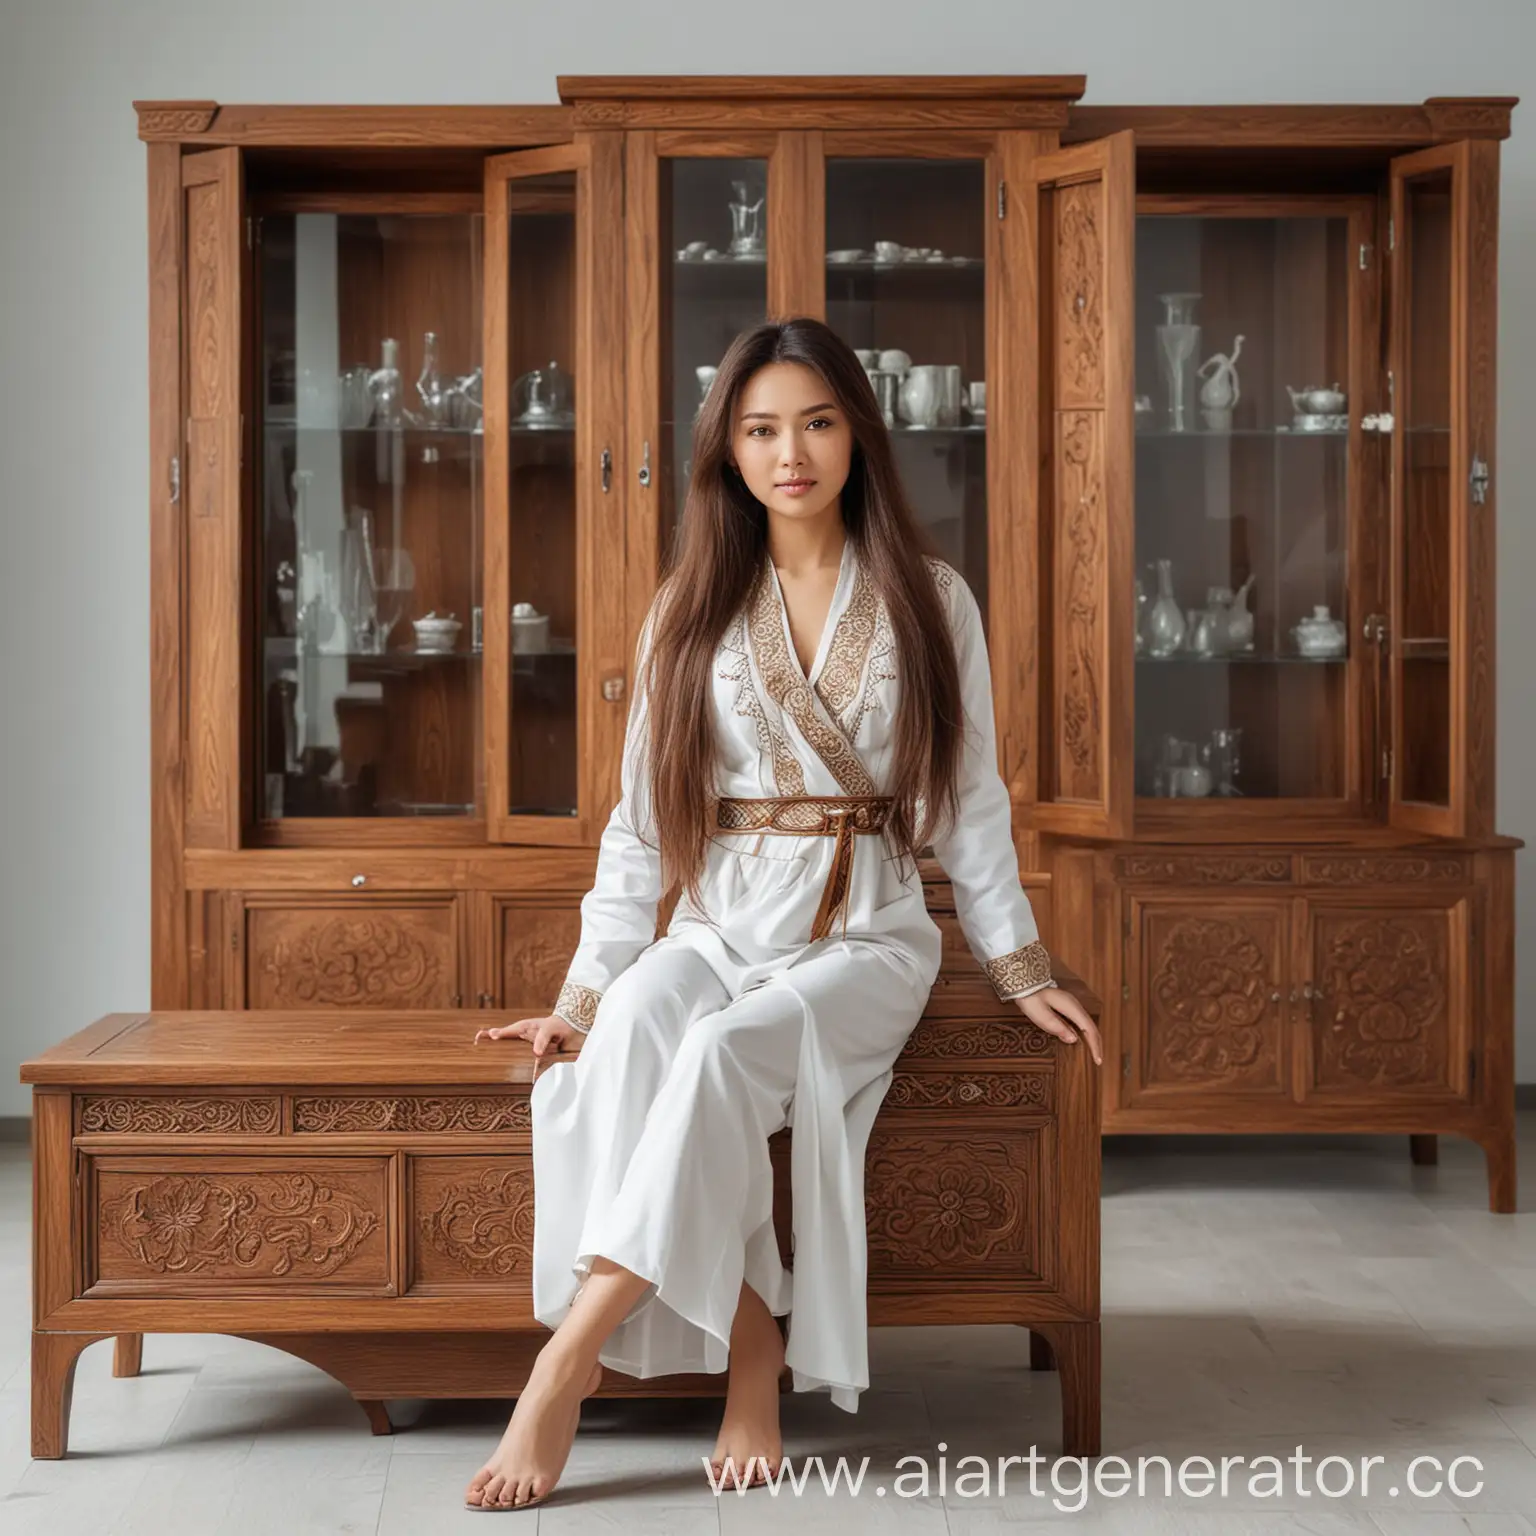 очень красивая азиатка из средней азии казашка брюнетка с длинными волосами в современном мебельном салоне в стиле минимализм корпусной мебели в национальном костюме 